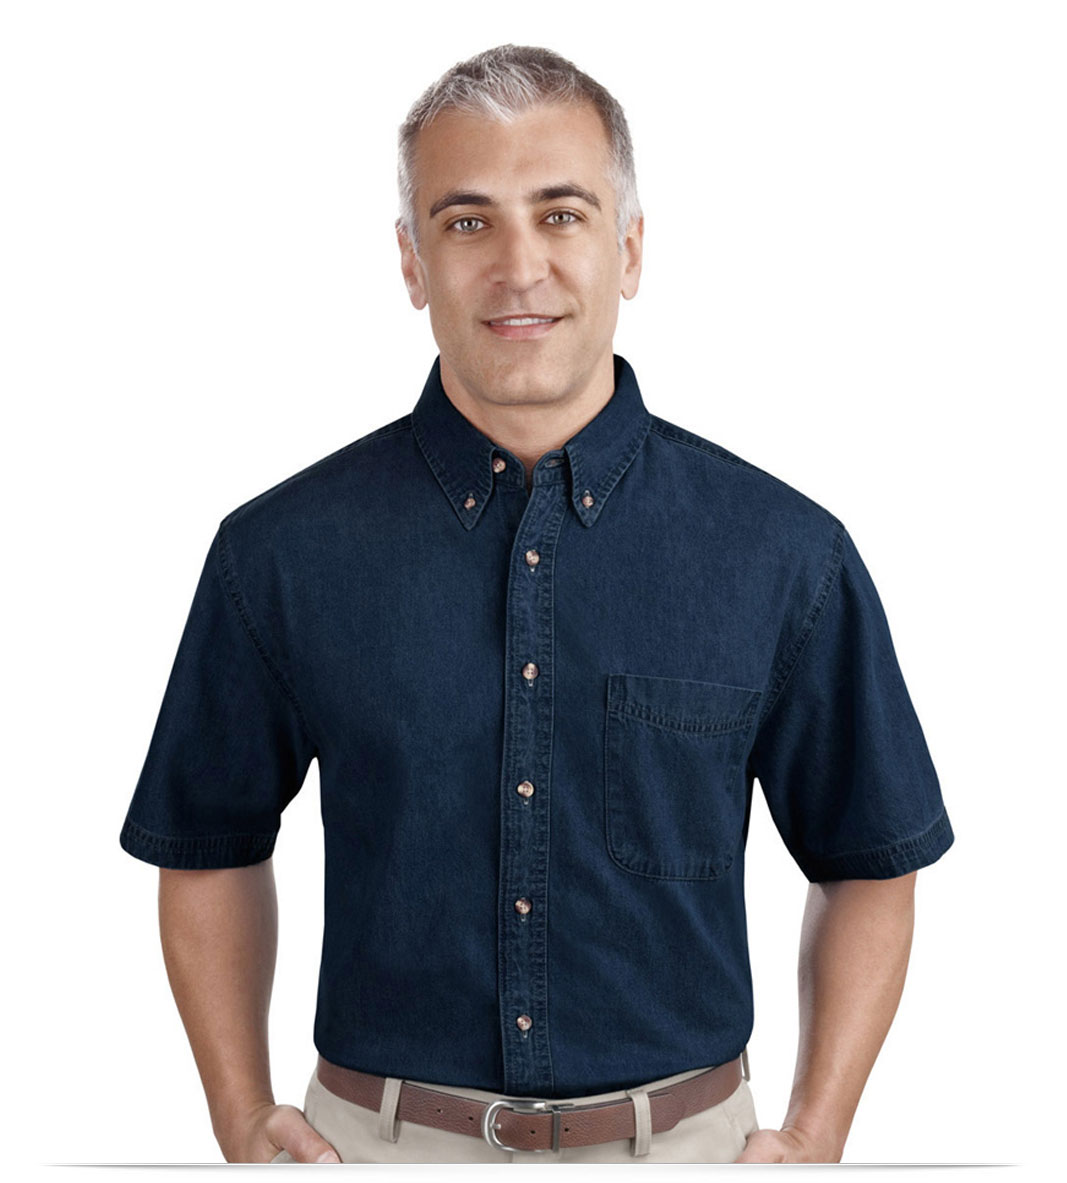 Polo Ralph Lauren Custom Fit Shirt Denim Dark Wash at CareOfCarlcom